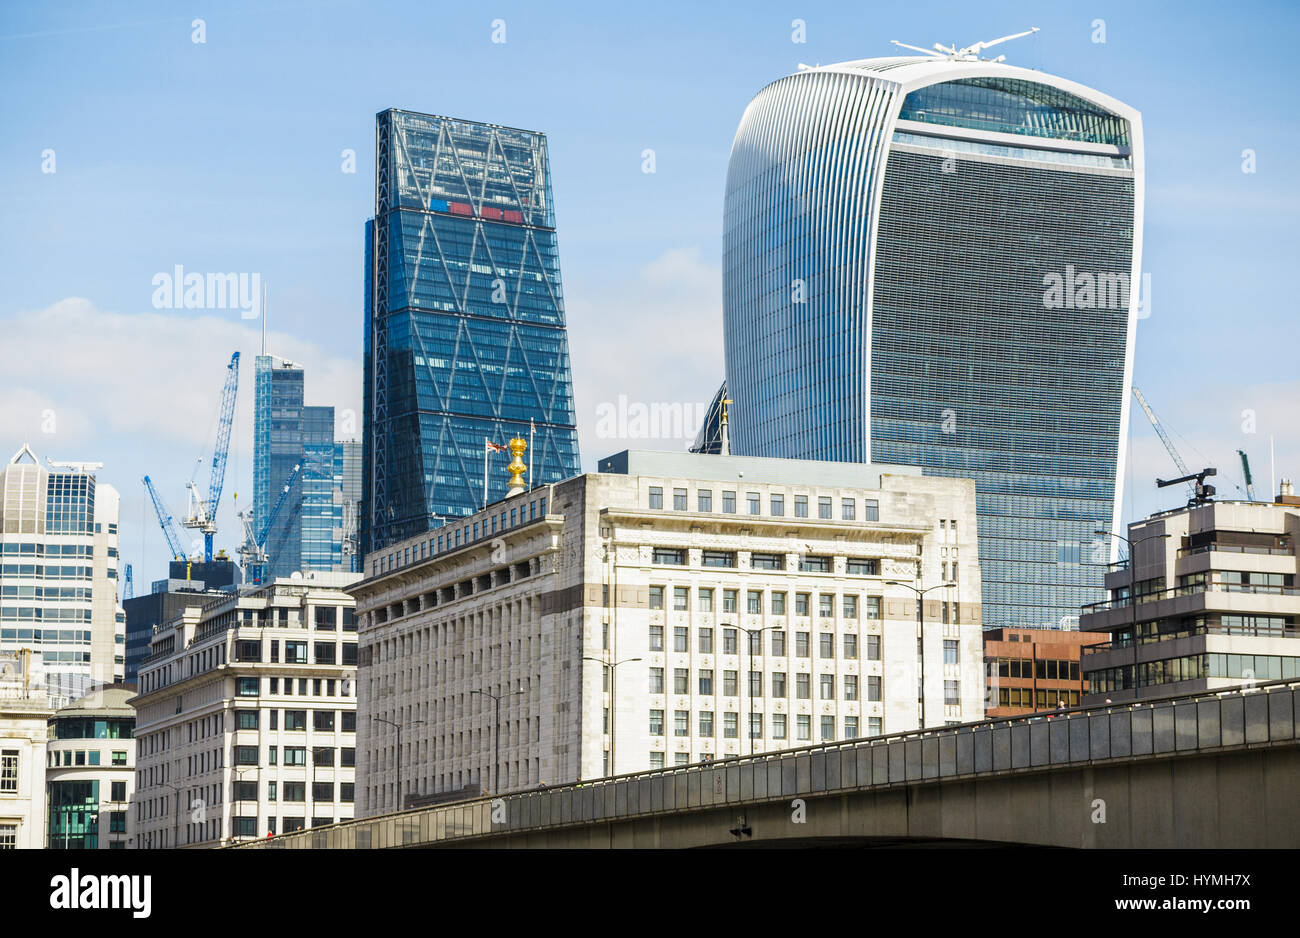 Walkie Talkie, Cheesegrater, Adelaide House, London Bridge: ikonische Gebäude und Strukturen im Finanzbezirk der City of London Stockfoto